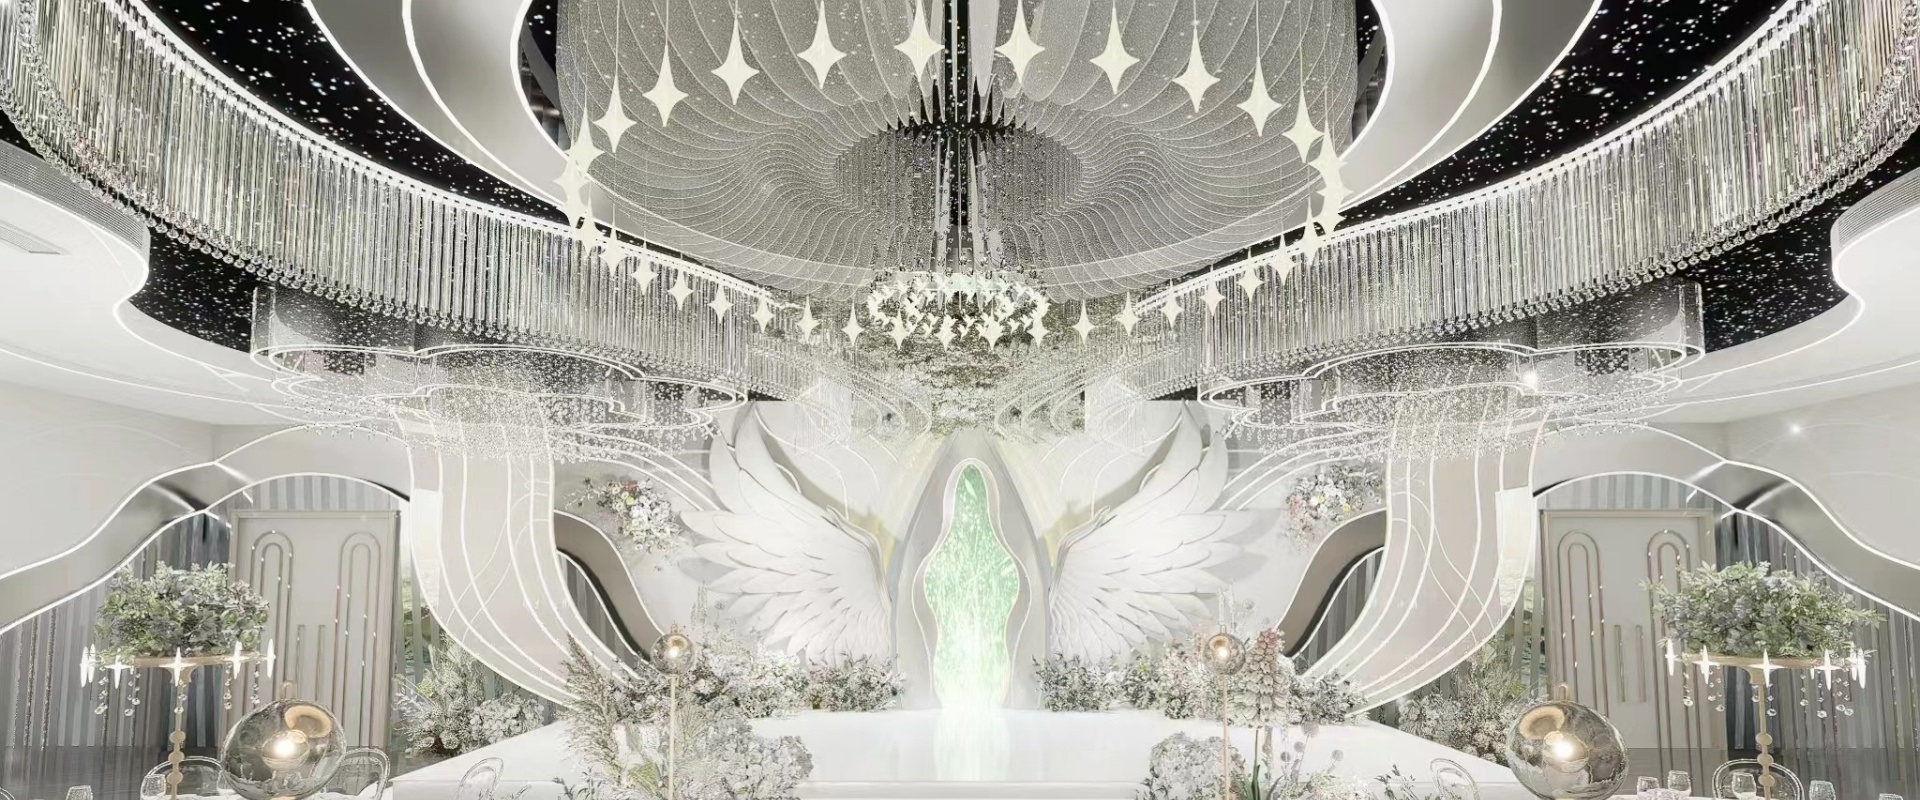 Dutti LED Modern Non-standard Chandelier Large Crystal Ceiling Pendant Lighting OEM/ODM for Wedding Ballroom